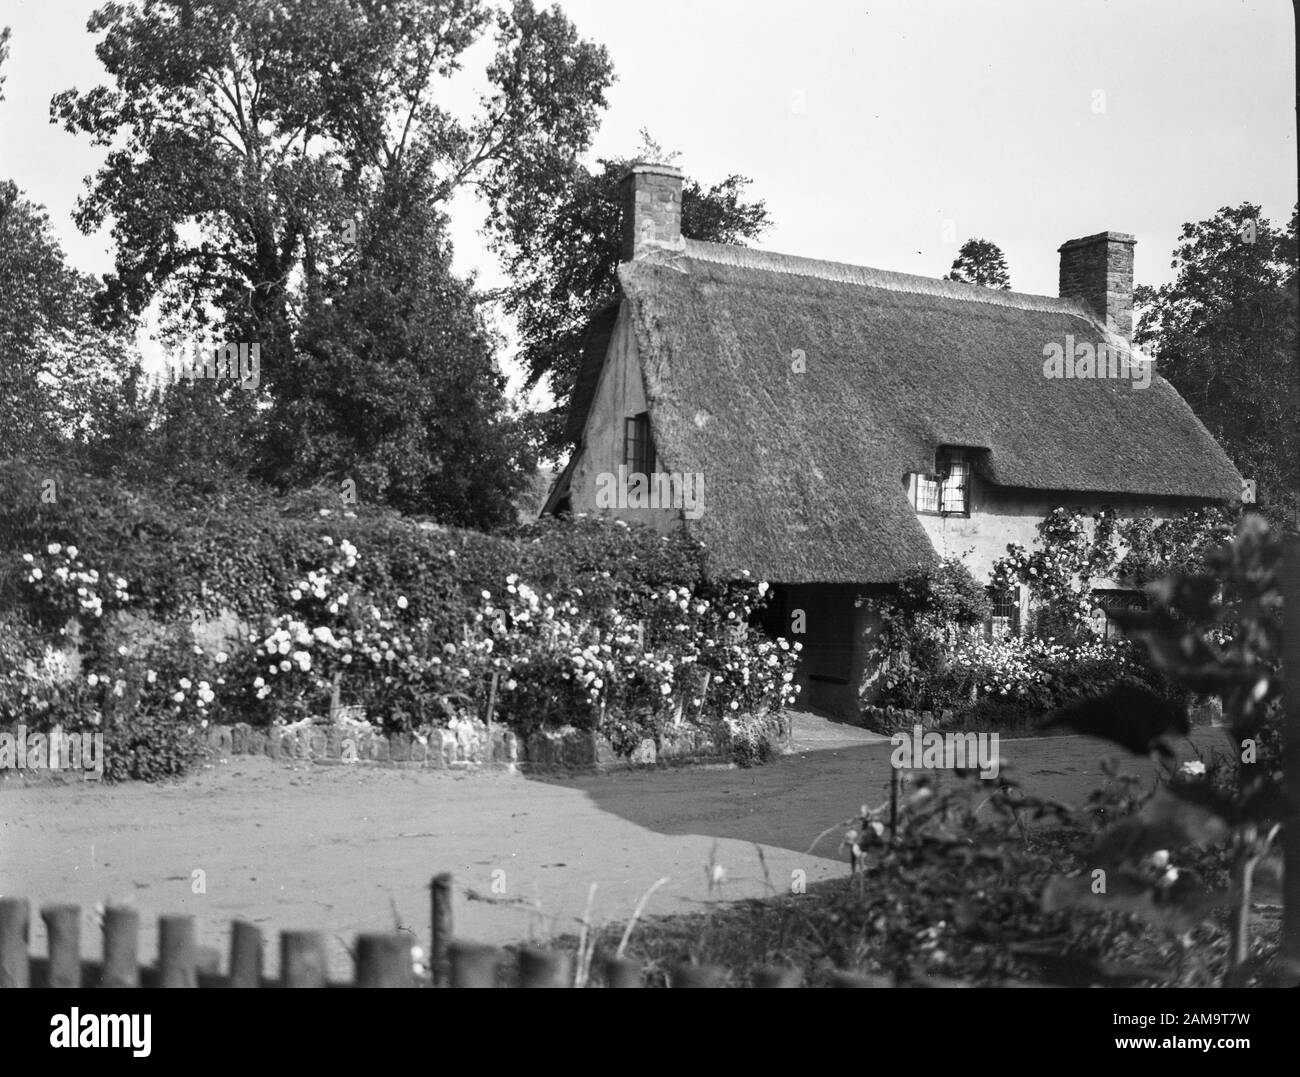 Image d'archive vers 1920 d'un cottage de pays de l'Ouest. Numérisé à partir du négatif d'origine. Banque D'Images